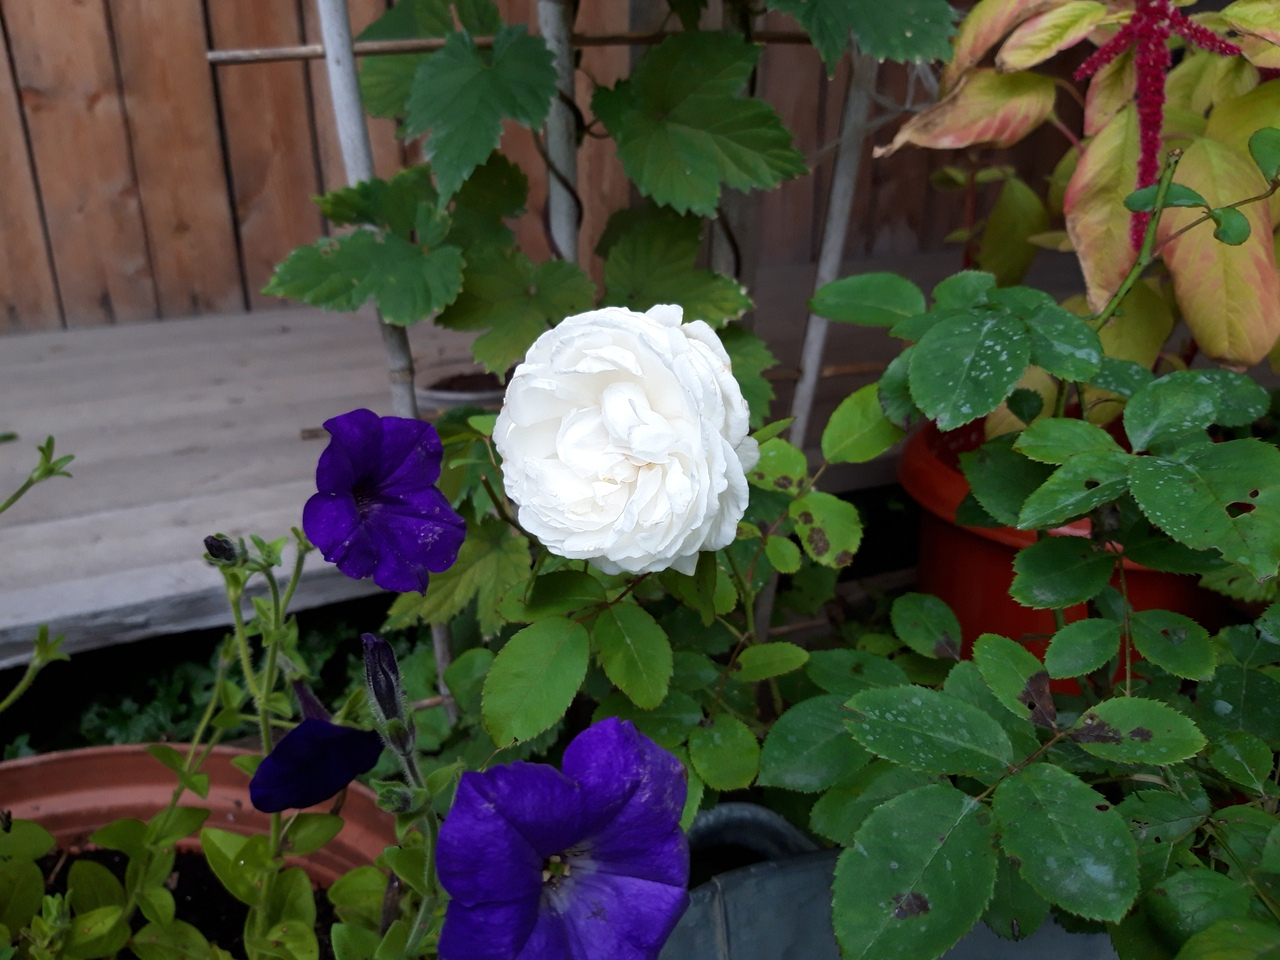 Фото дня в Сыктывкаре: Белоснежная роза в цветущем саду